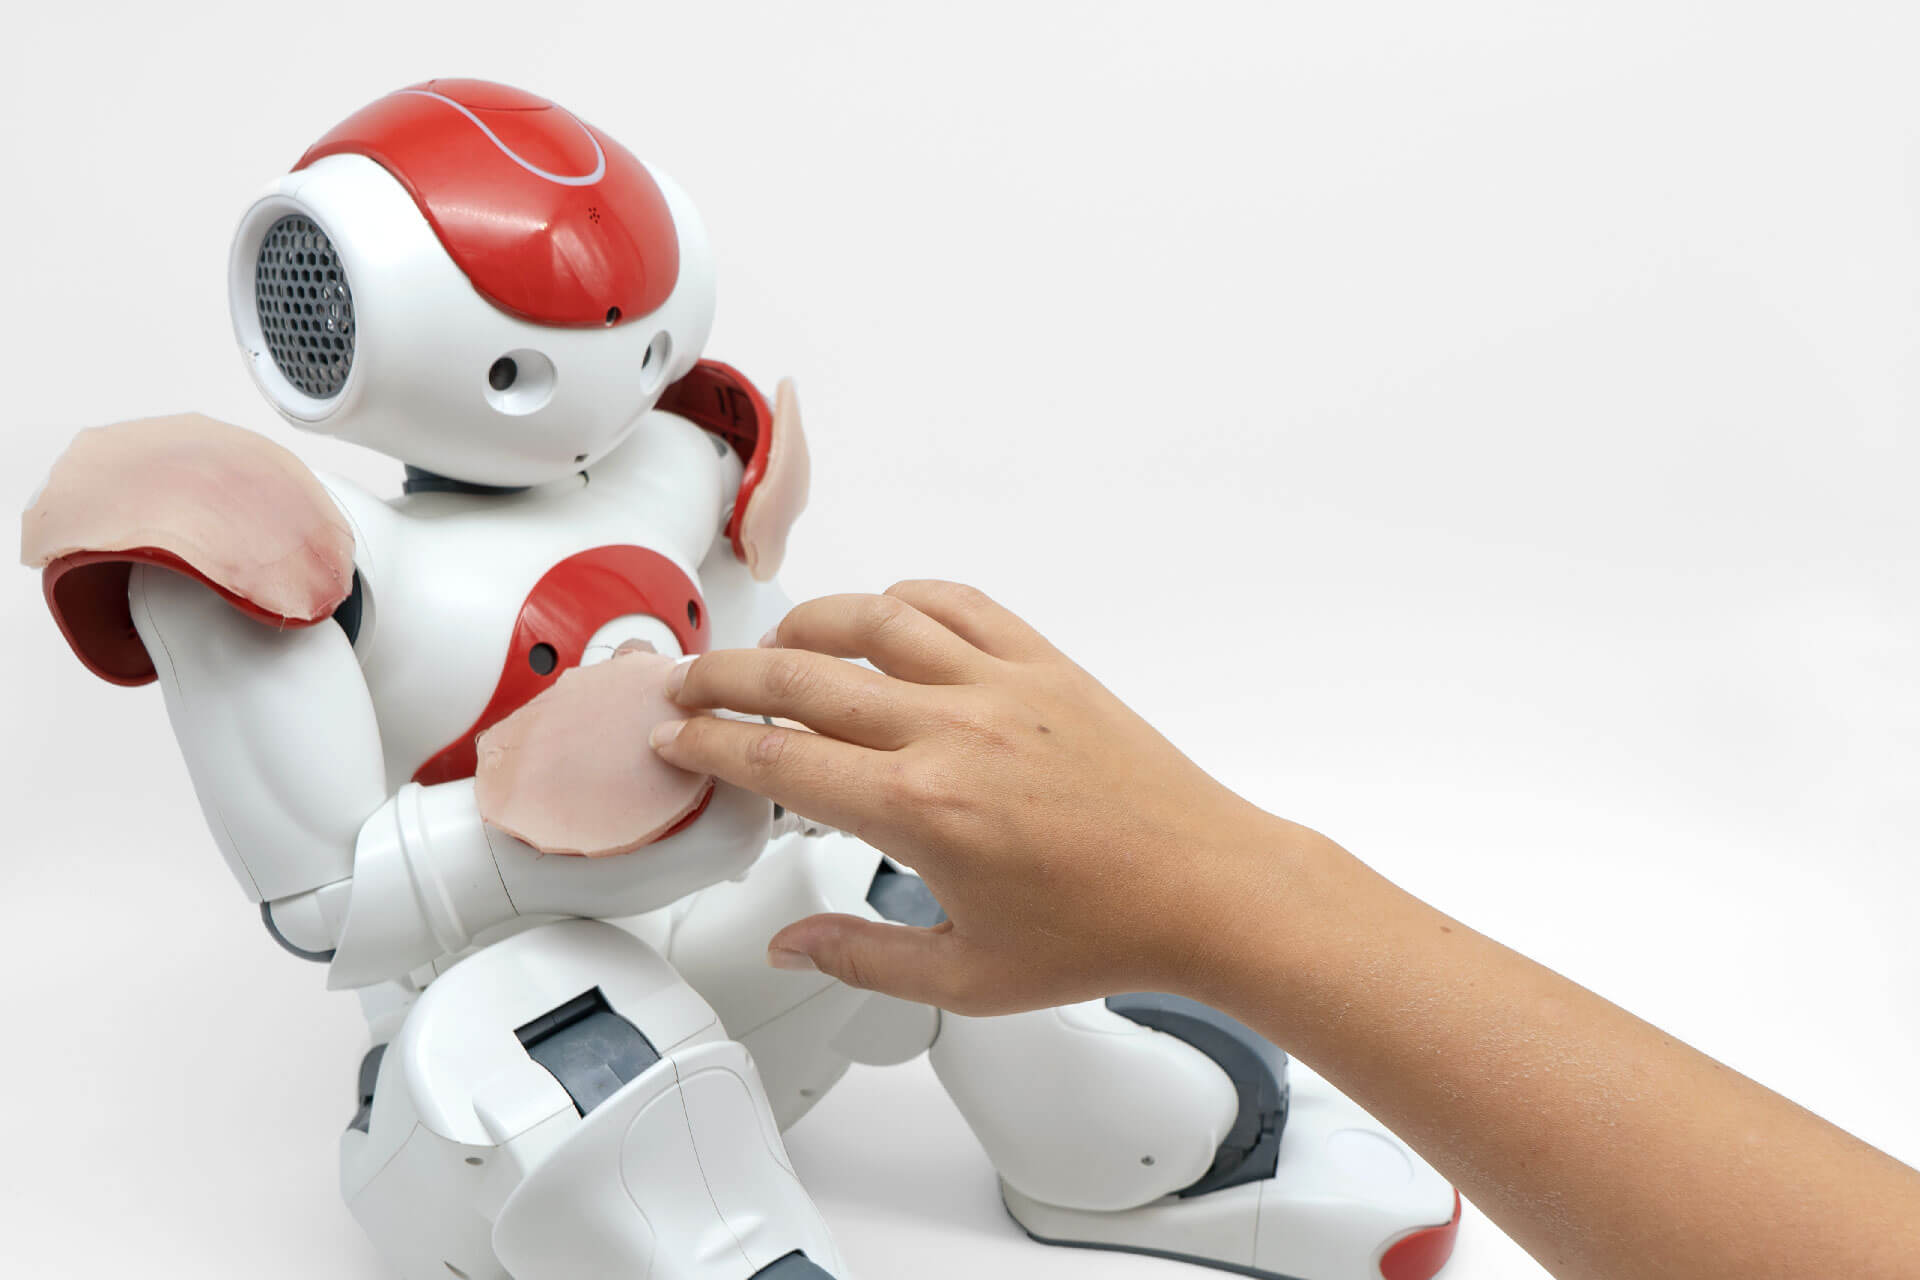 चमड़ा, के लिए डिज़ाइन किया गया स्मार्ट फोन और humanoid रोबोट है कि स्पर्श करने के लिए जवाब